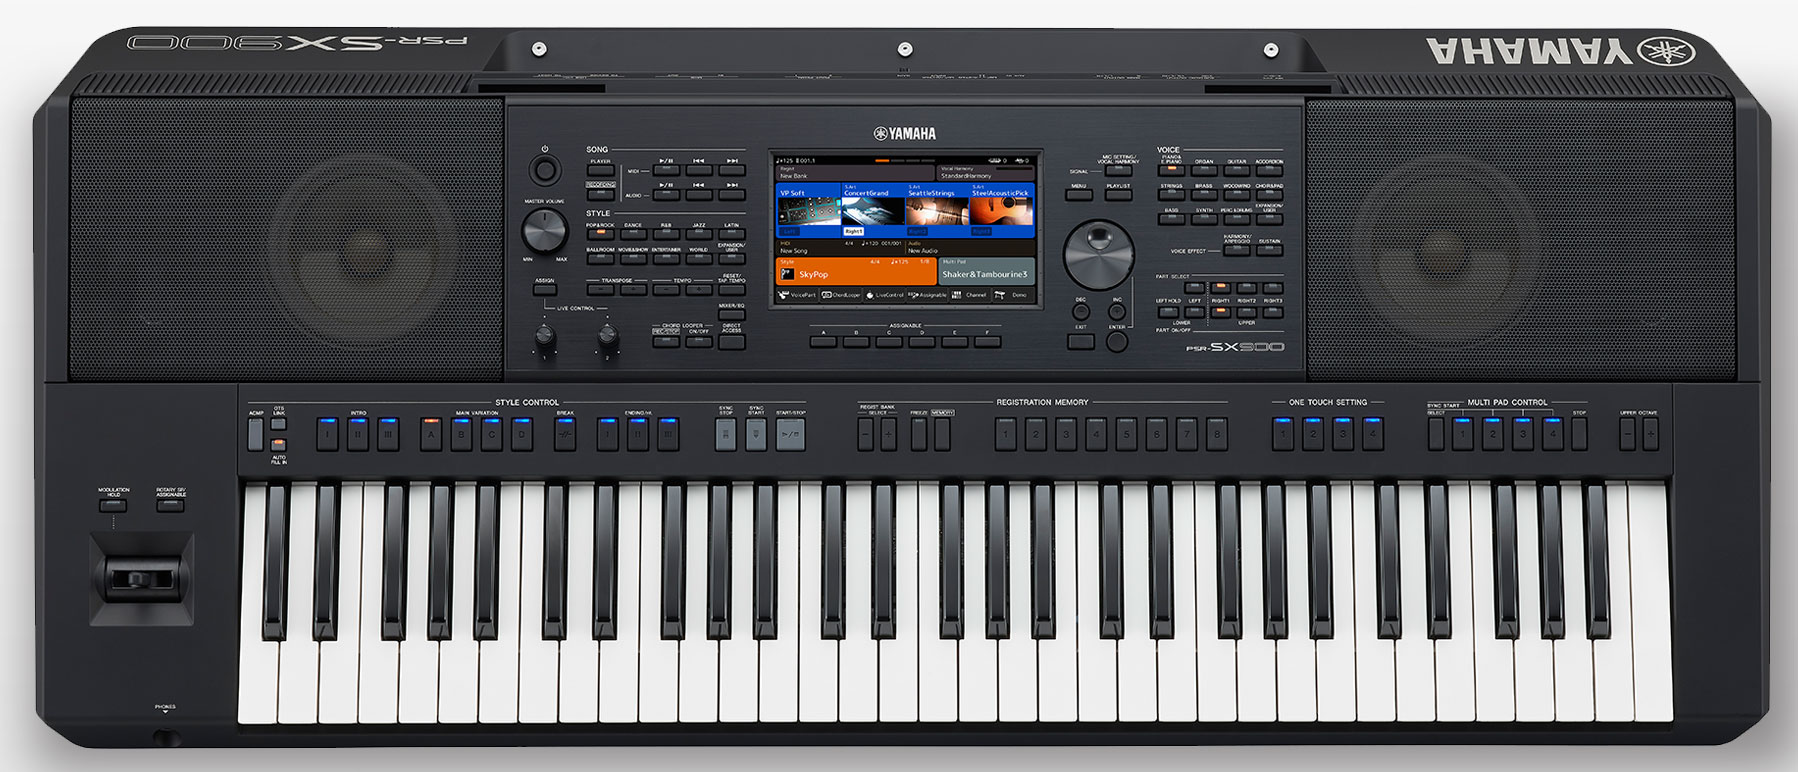 YAMAHA PSR-SX900 - цифровая рабочая станция, 61 клавиша органного типа